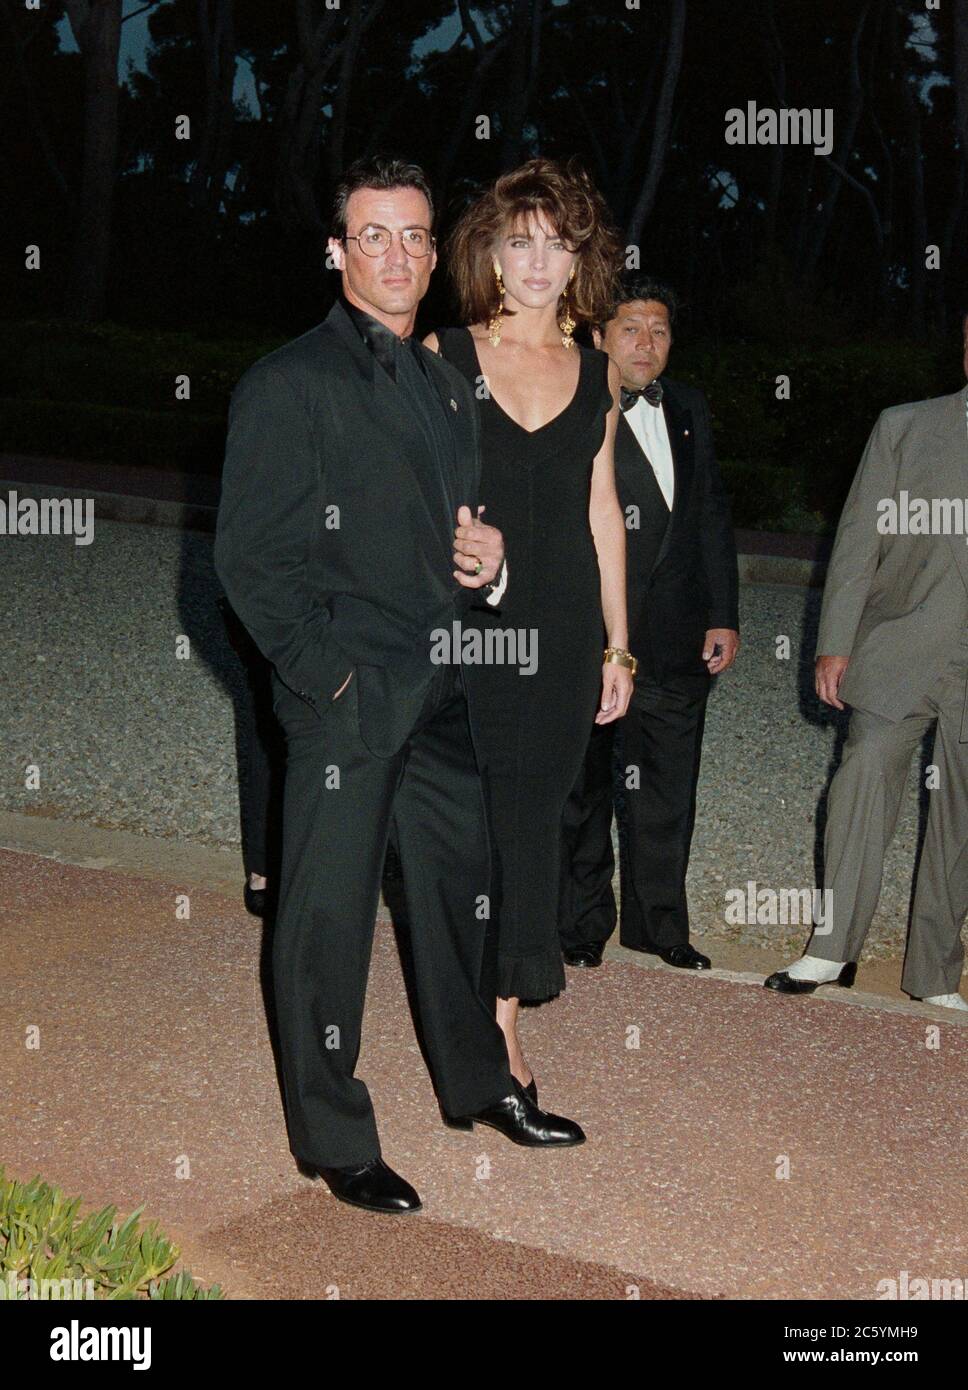 ARCHIV: CANNES, FRANKREICH. C. Mai 1991: Sylvester Stallone & Jennifer Flavin bei den Filmfestspielen von Cannes. Datei Foto © Paul Smith/Featureflash Stockfoto